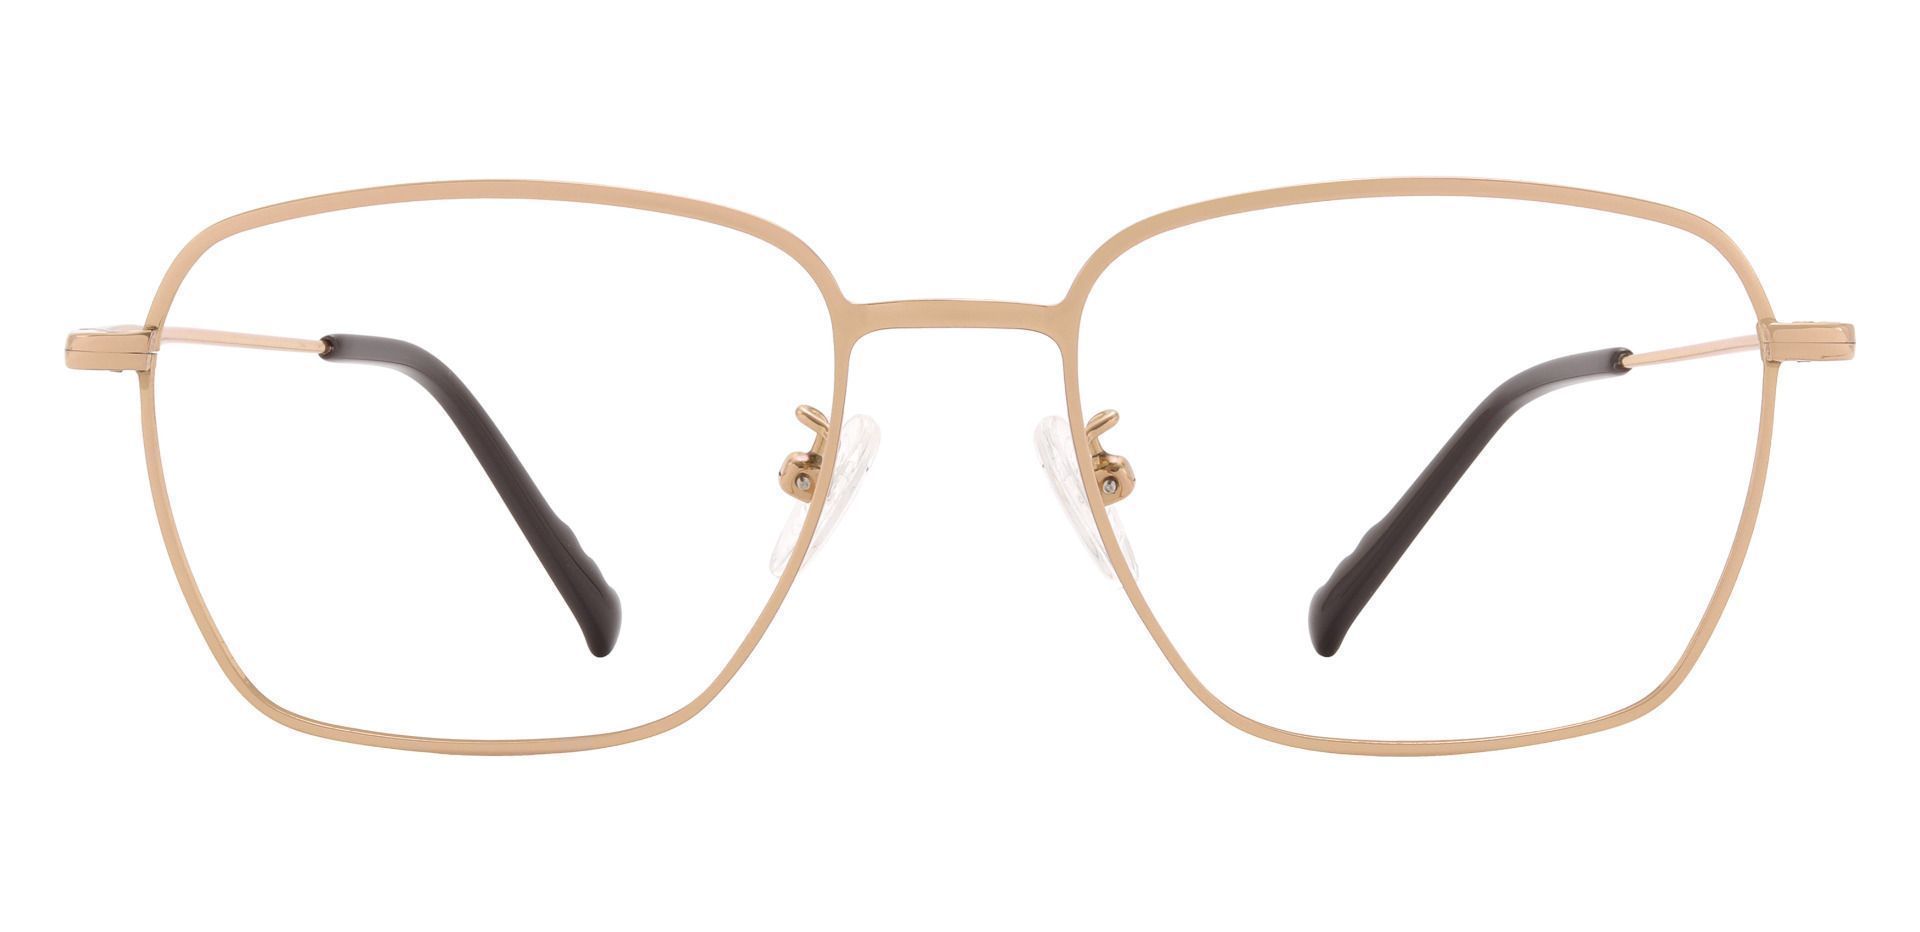 Emilio Geometric Prescription Glasses - Gold